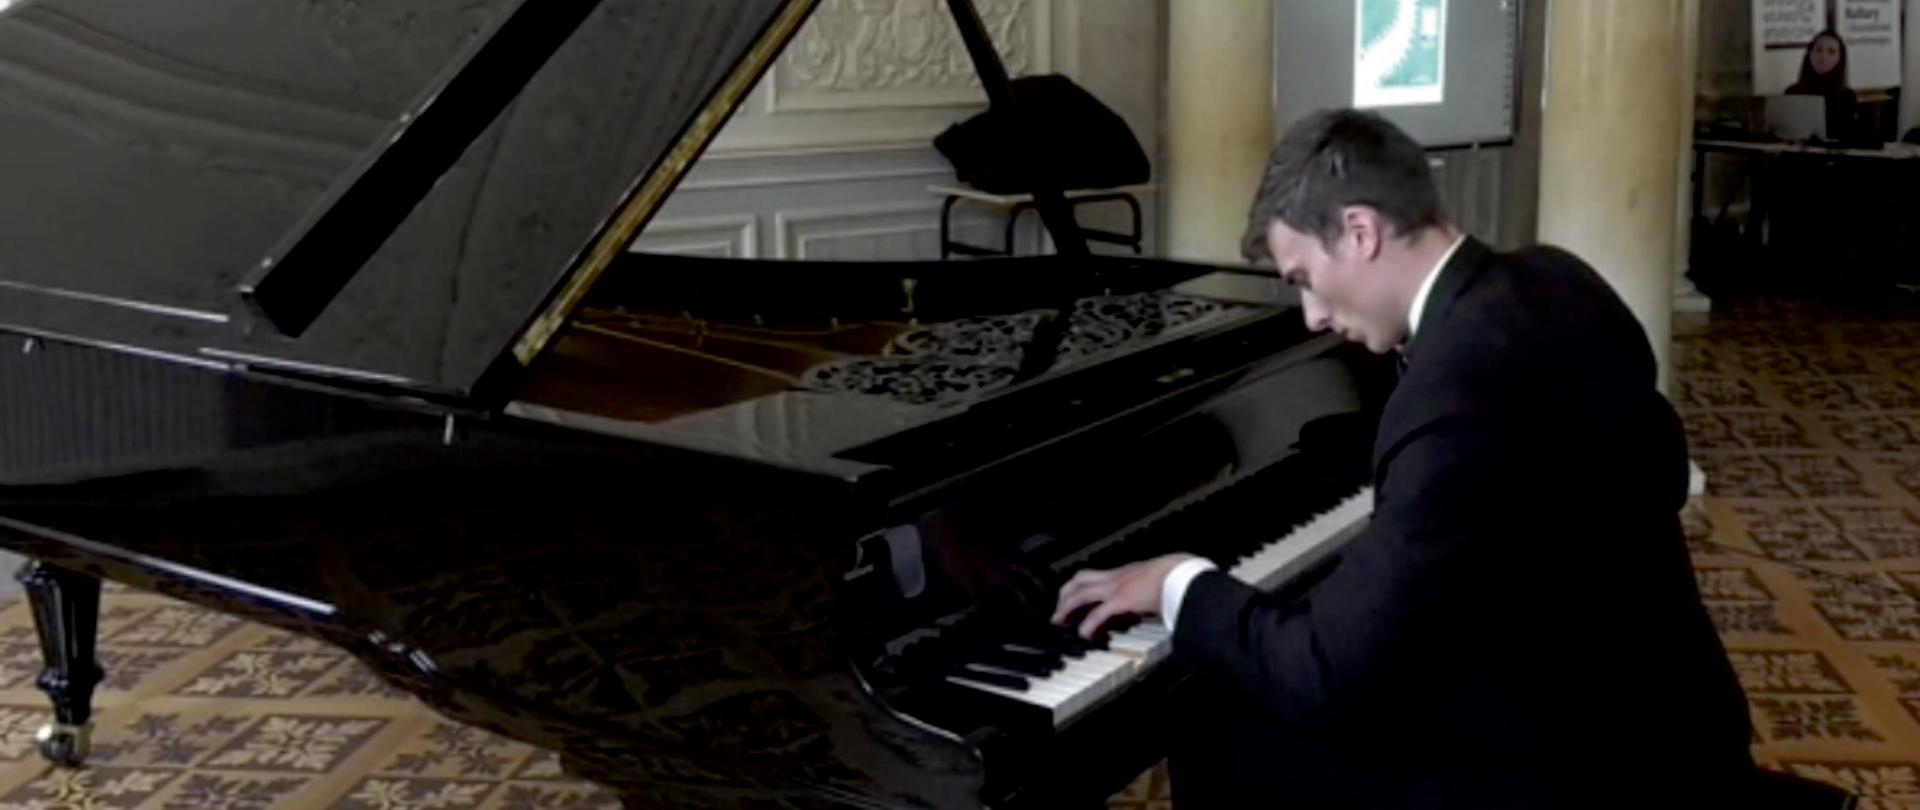 Zdjęcie pianisty Pana Jacka Wendlera wykonującego utwór Chopinowski przy czarnym fortepianie.